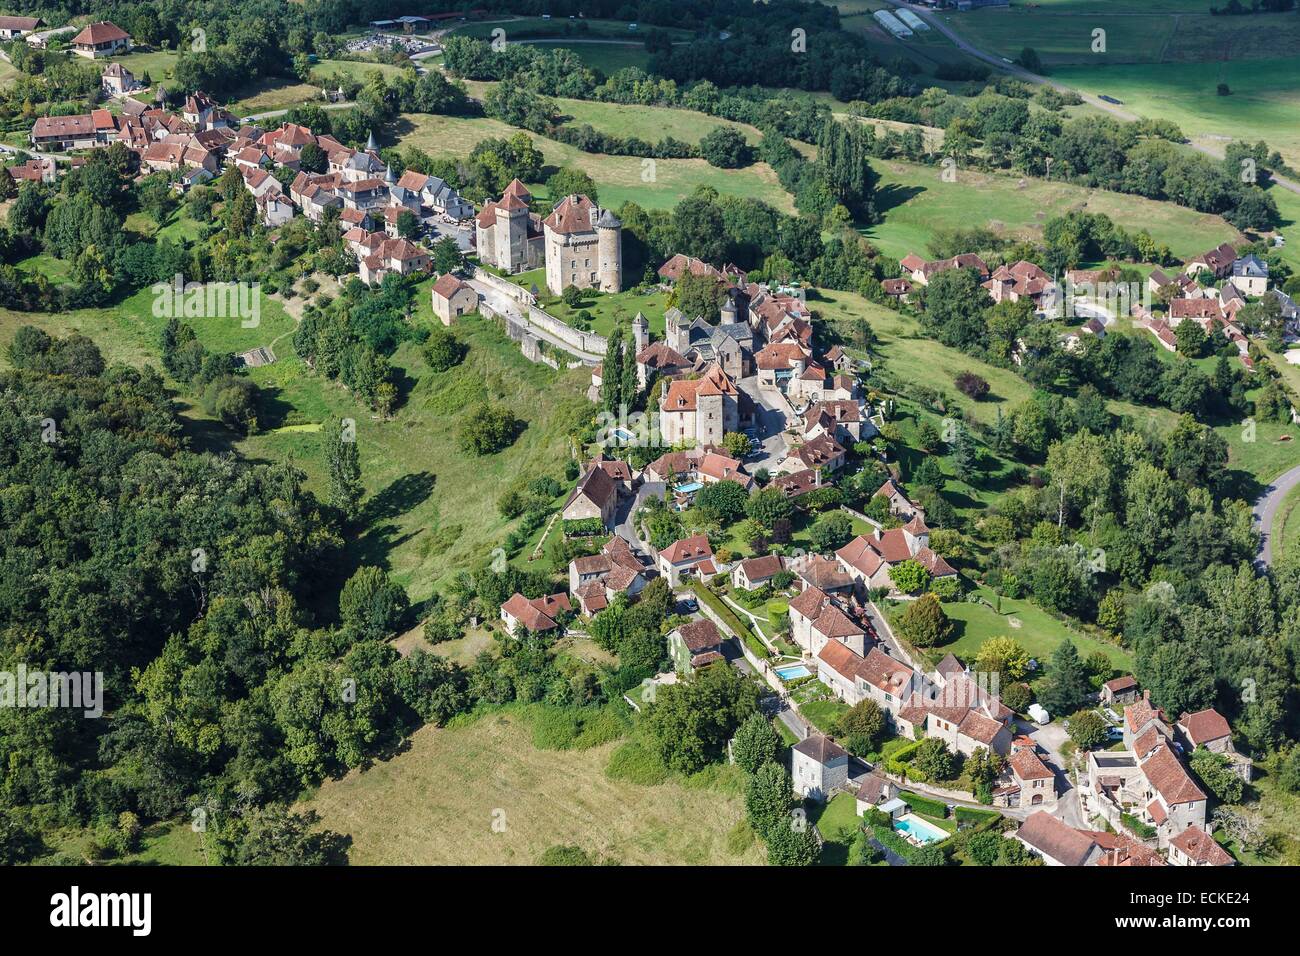 France, Correze, Curemonte, labelled Les Plus Beaux Villages de France (The Most Beautiful Villages of France), the village (aerial view) Stock Photo